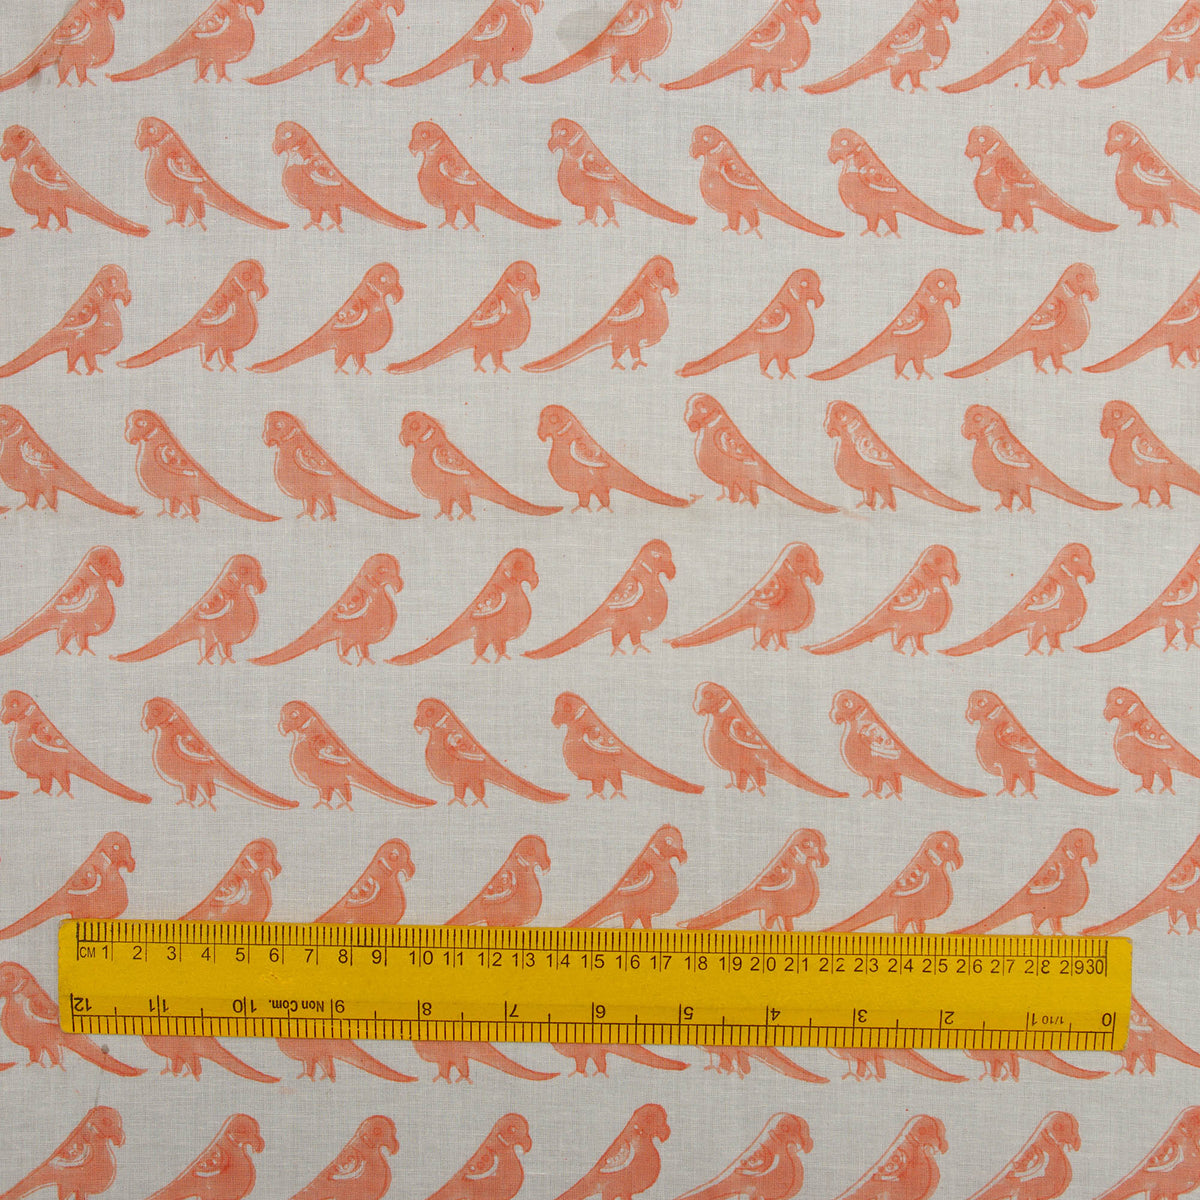 Blockdruck-Papagei-Vogel-Muster 100 % Baumwollstoff Design 168